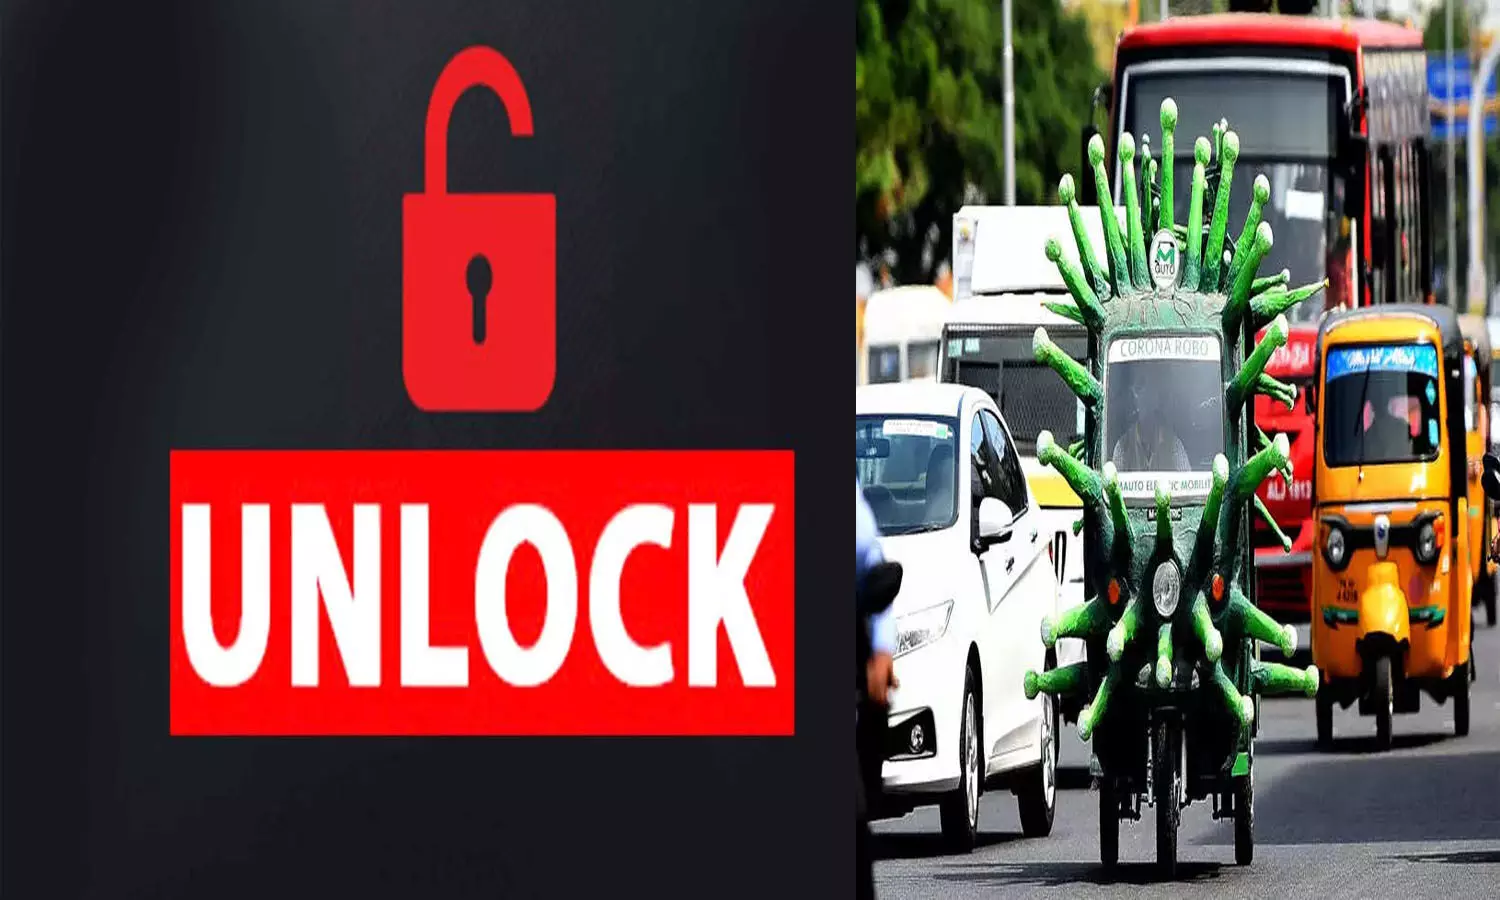 Unlock: केन्द्र की सलाह, अनलॉक की प्रक्रिया सोच-समझ कर शुरू करें राज्य